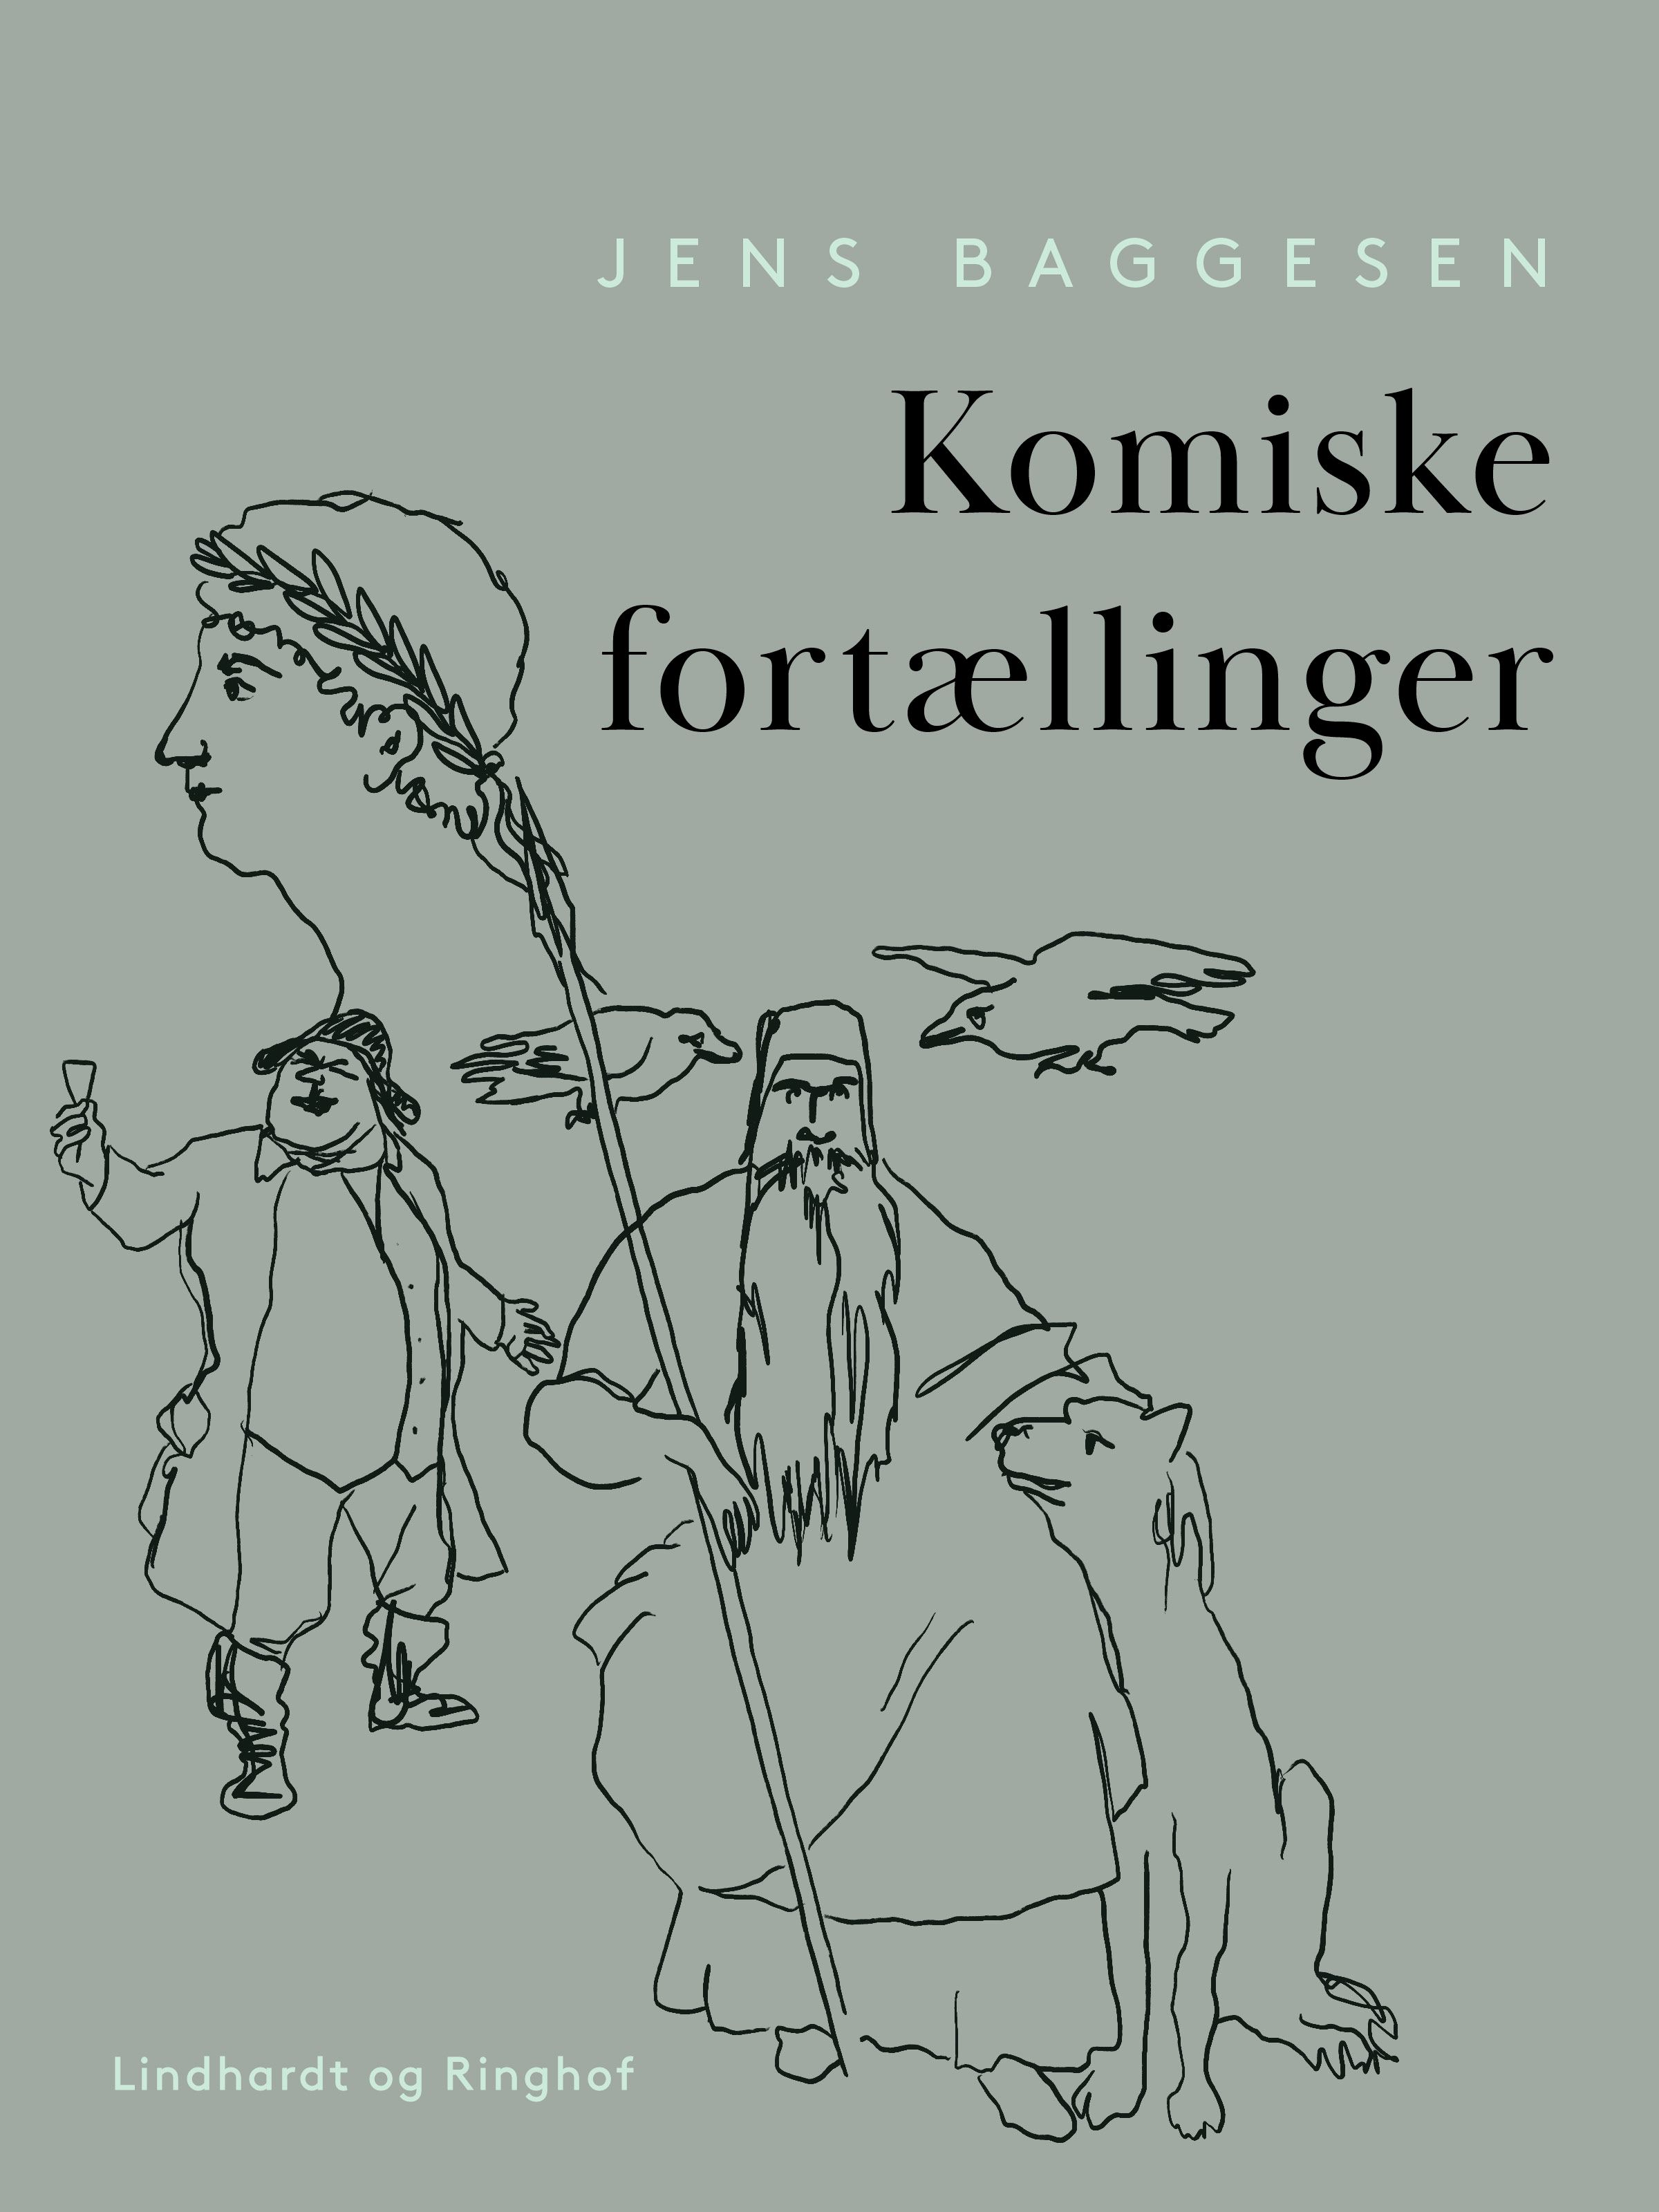 Komiske fortællinger, e-bog af Jens Baggesen